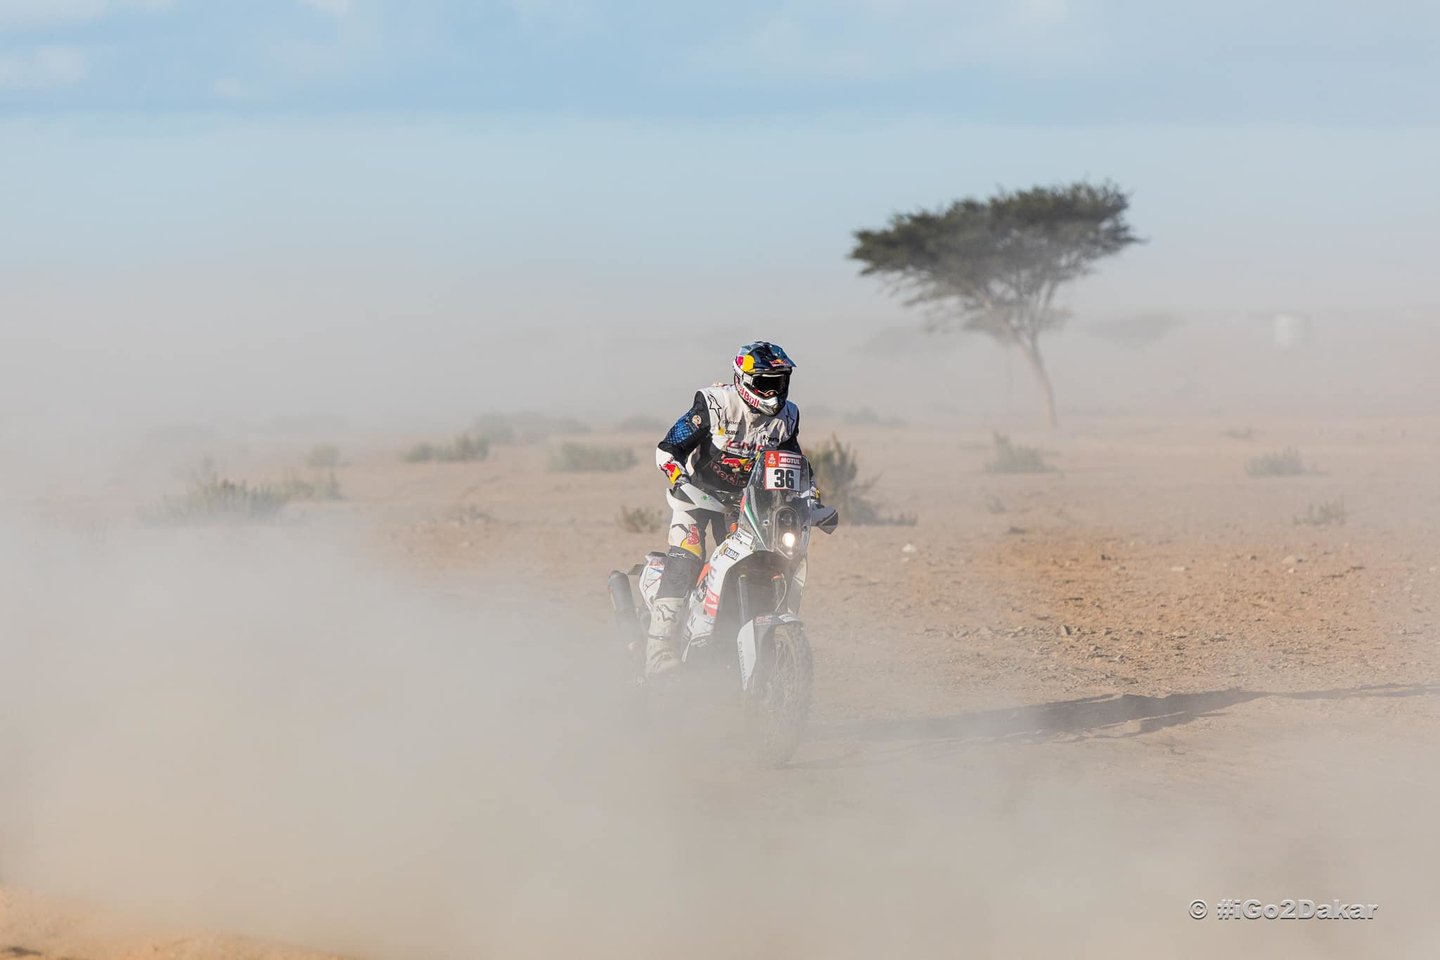 Dakaro ralis laikomas pačiomis sudėtingiausiomis varžybomis dalyviams. Tuo pačiu jis gali būti vadinamas bene vienu pavojingiausių auto ir moto sporto renginių Pasaulyje.<br>Pranešėjų spaudai nuotr.